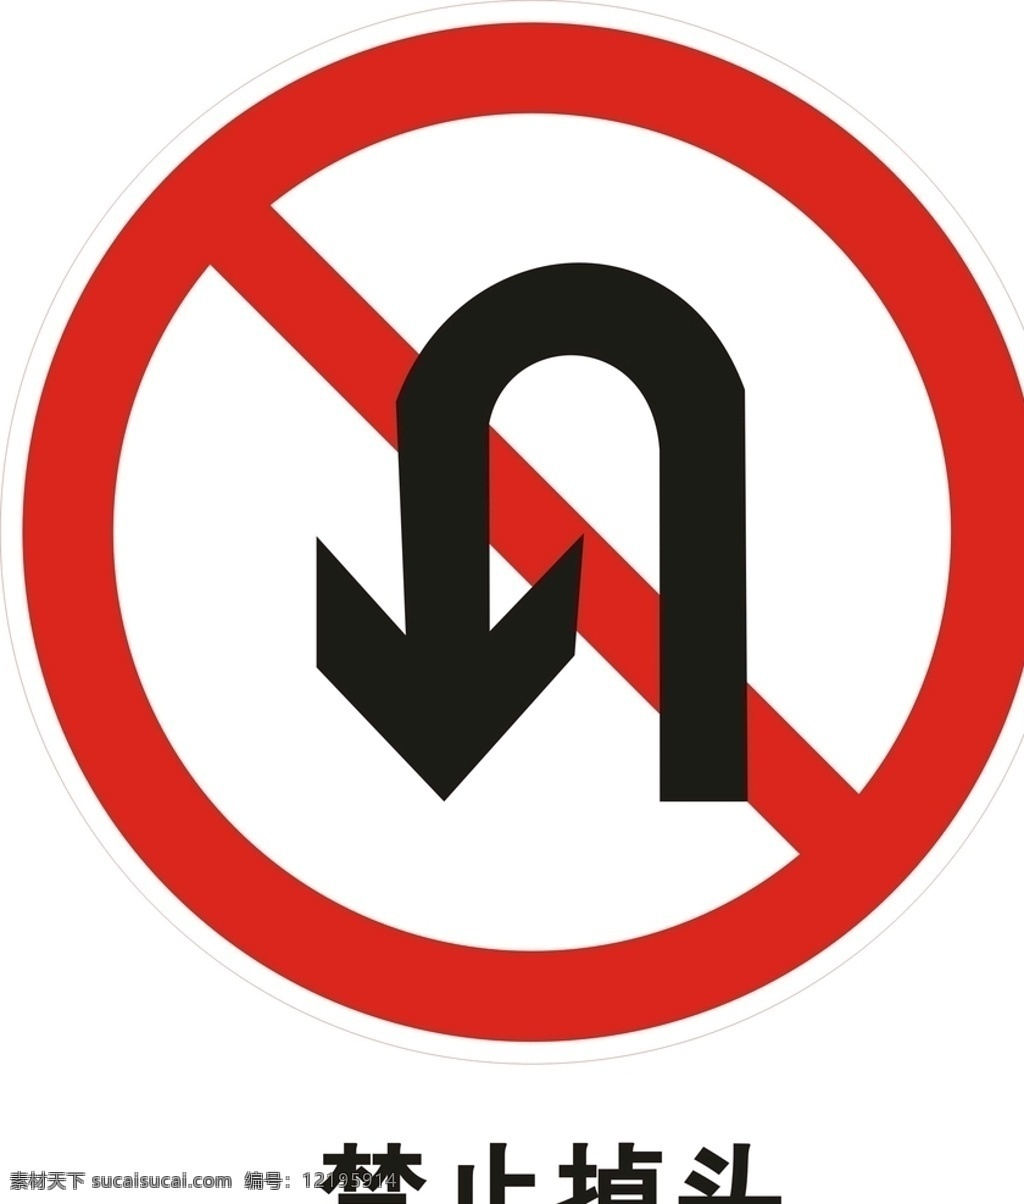 禁止掉头标志 禁止掉头 禁止掉头提示 禁止掉头标识 禁止 掉头 logo 公共标识 标志图标 公共标识标志